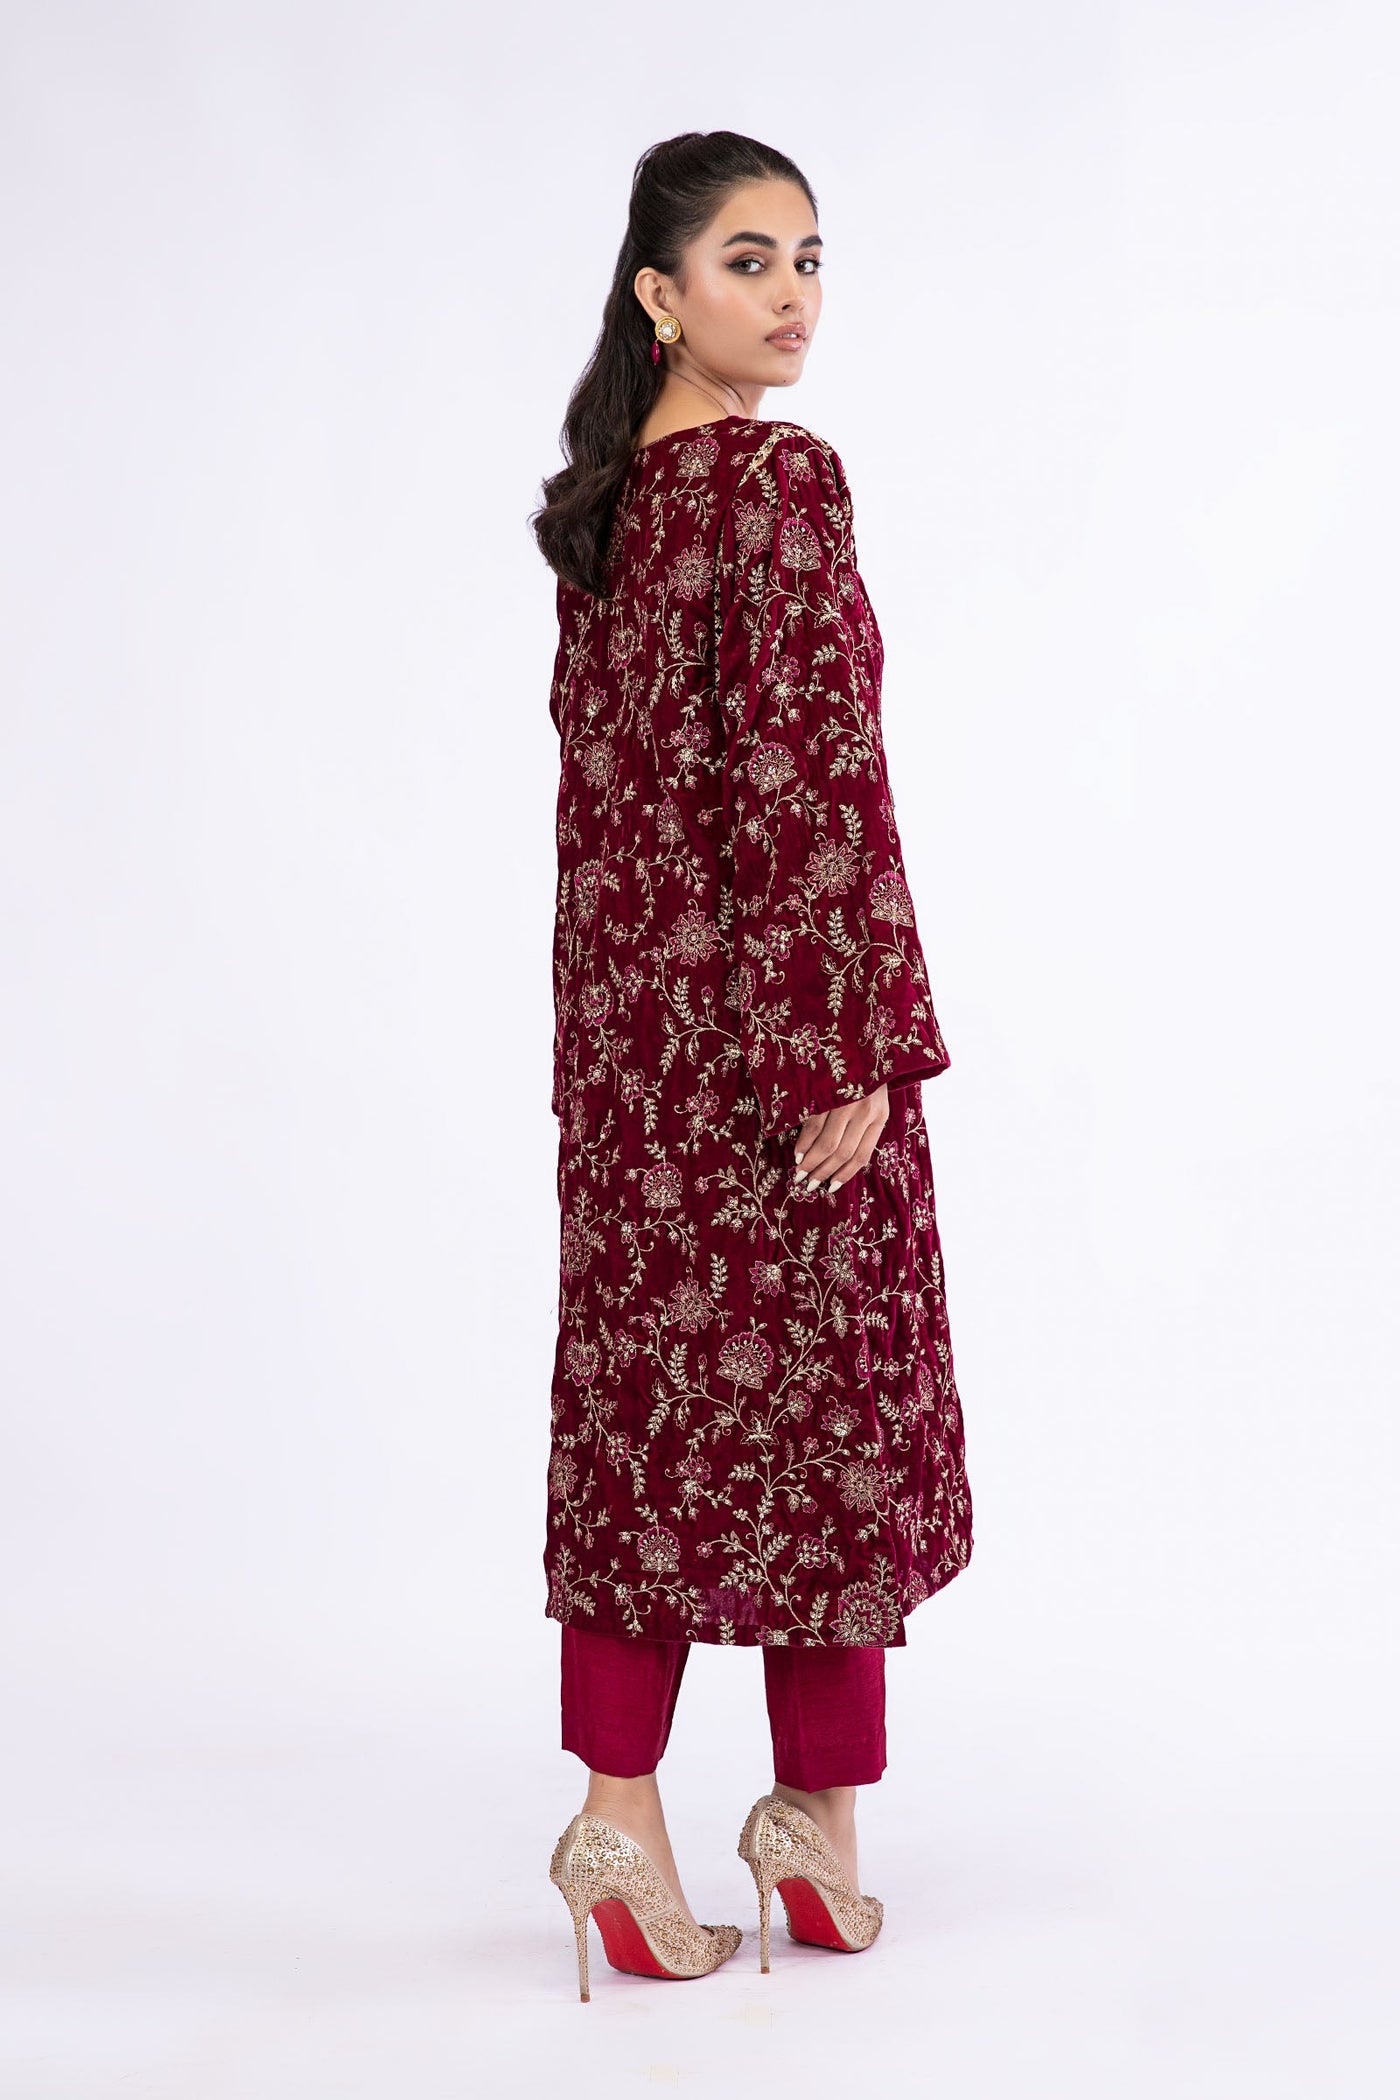 M.Luxe Fabrics Pink LF-524